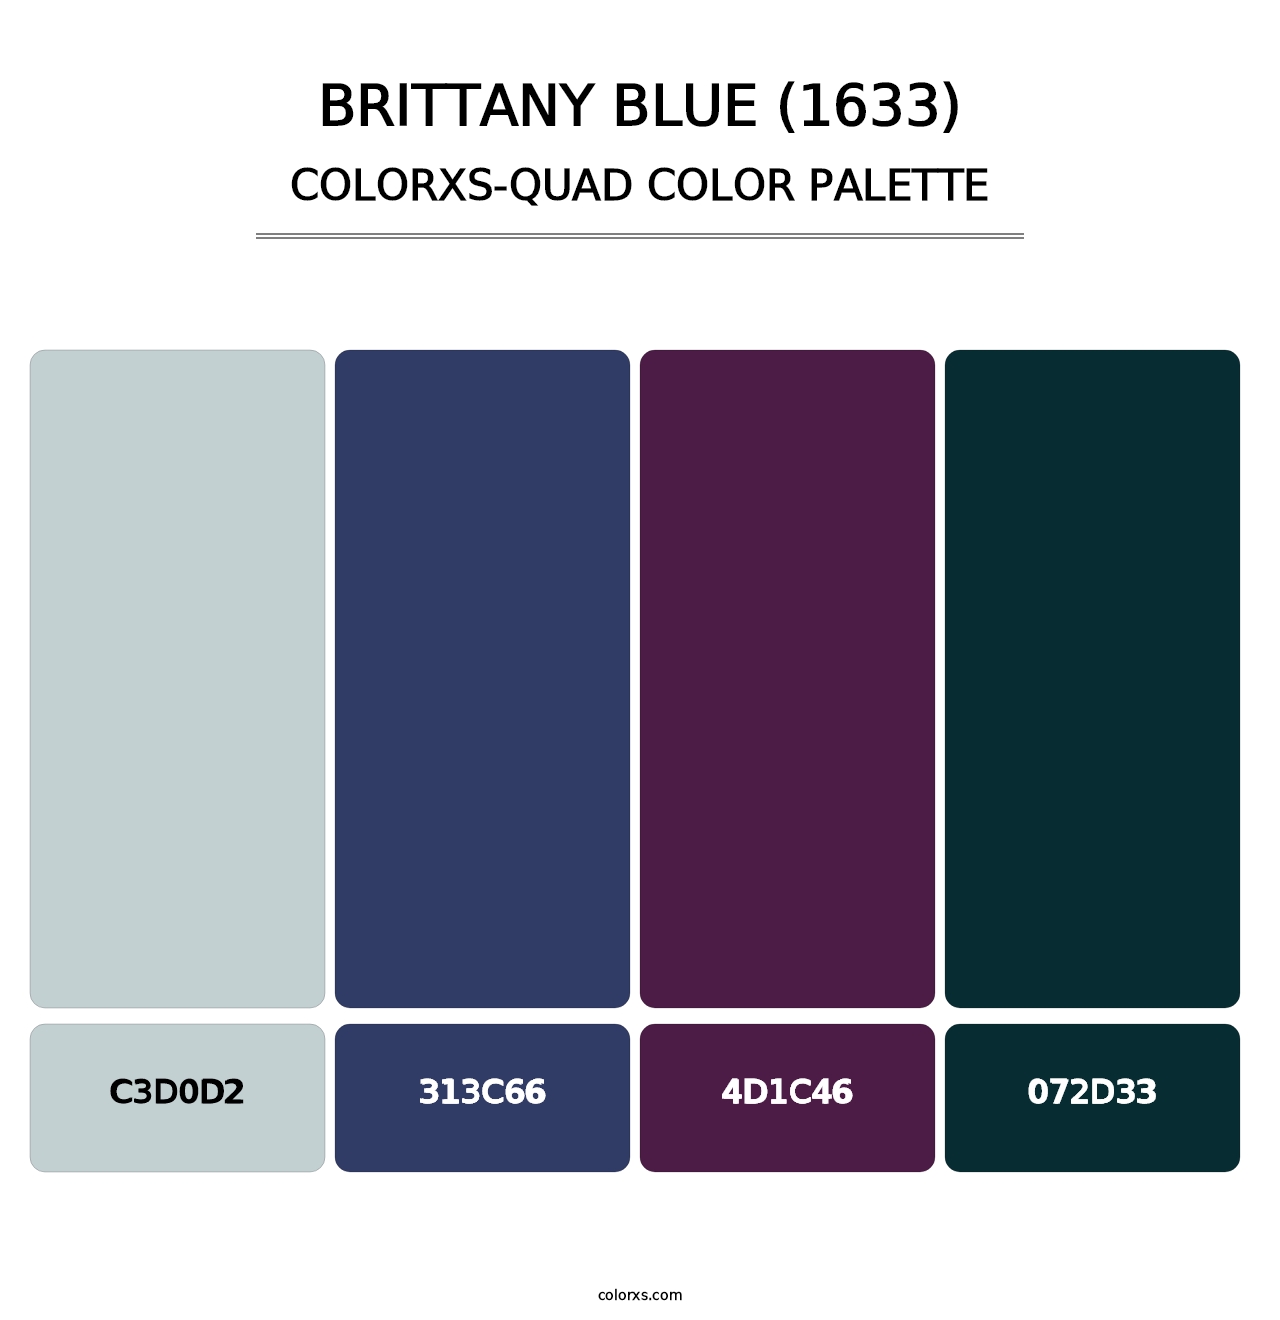 Brittany Blue (1633) - Colorxs Quad Palette